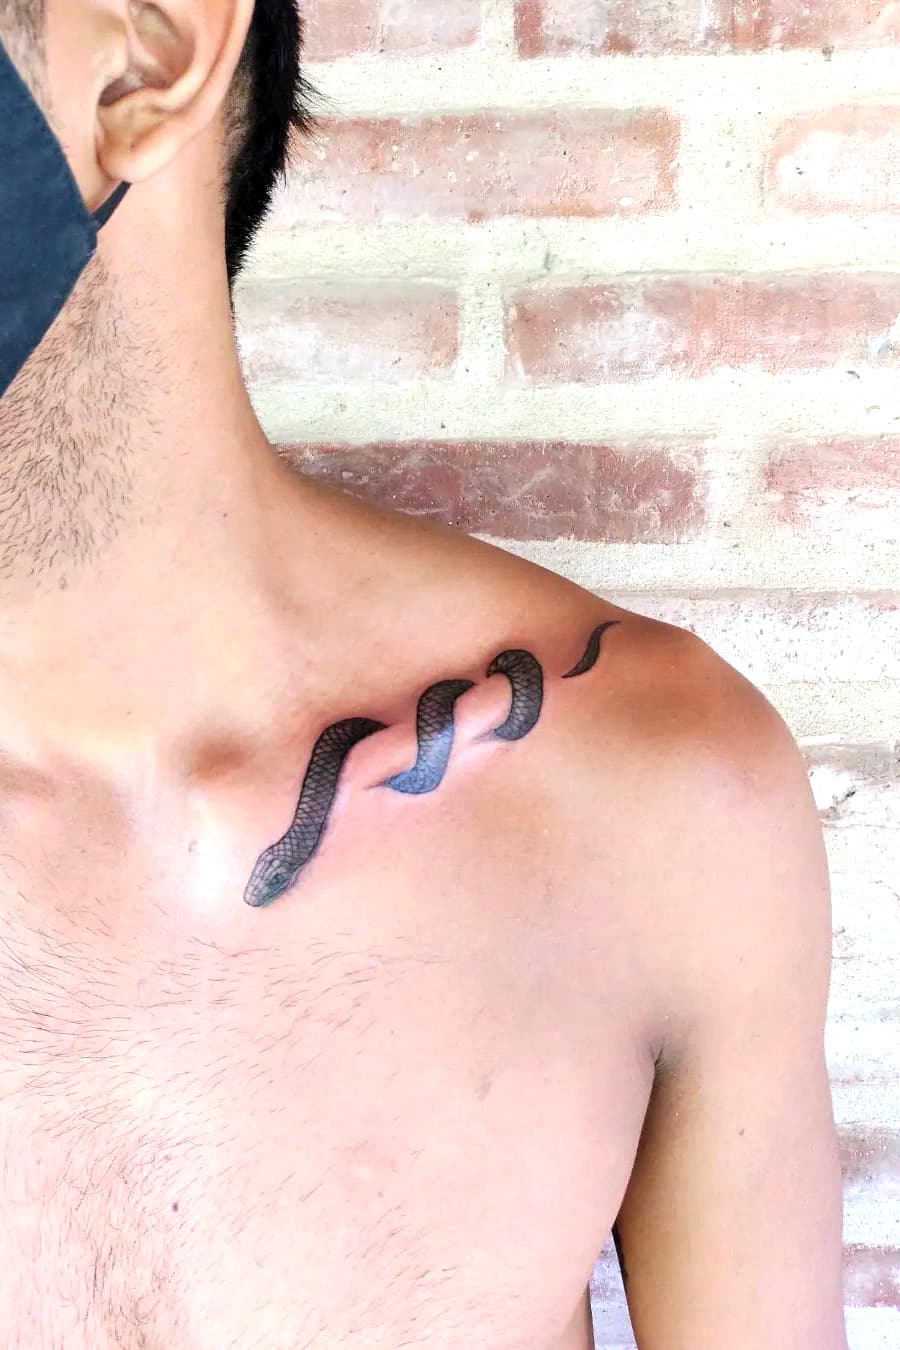 Floral Cobra Tattoo